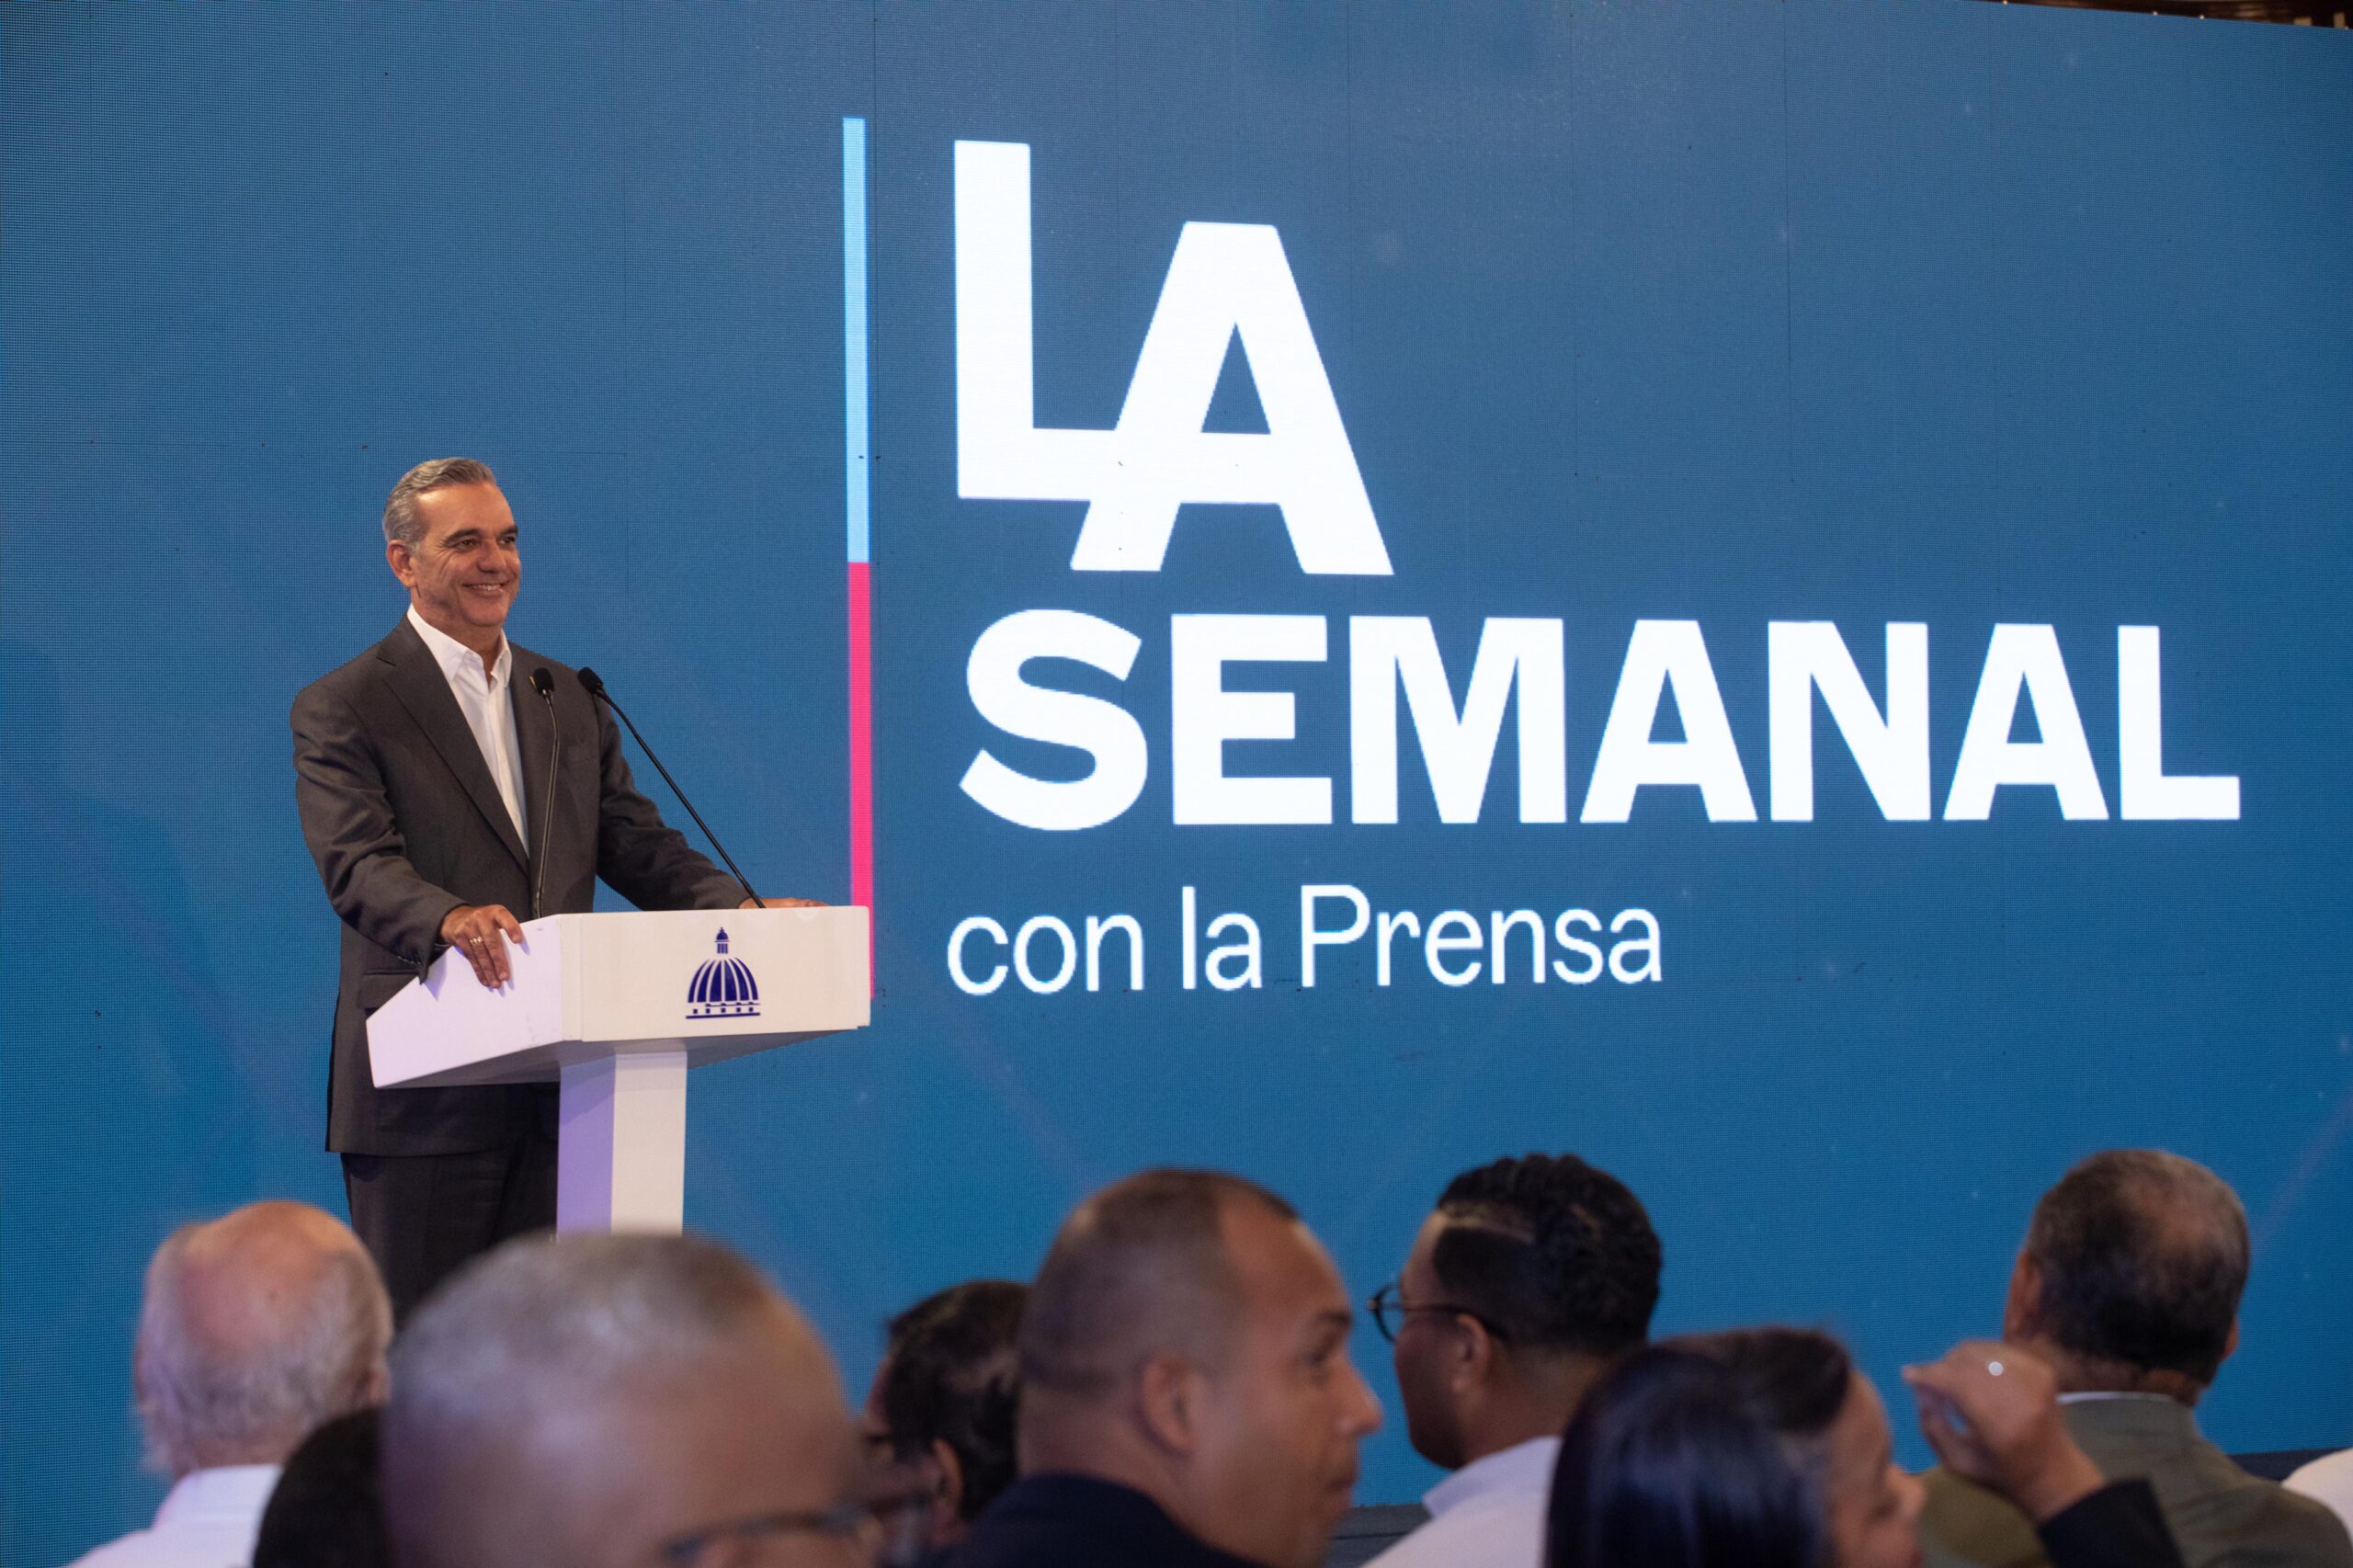 Presidente Abinader destaca avances en el acercamiento de servicios y políticas públicas en favor de los dominicanos en el exterior